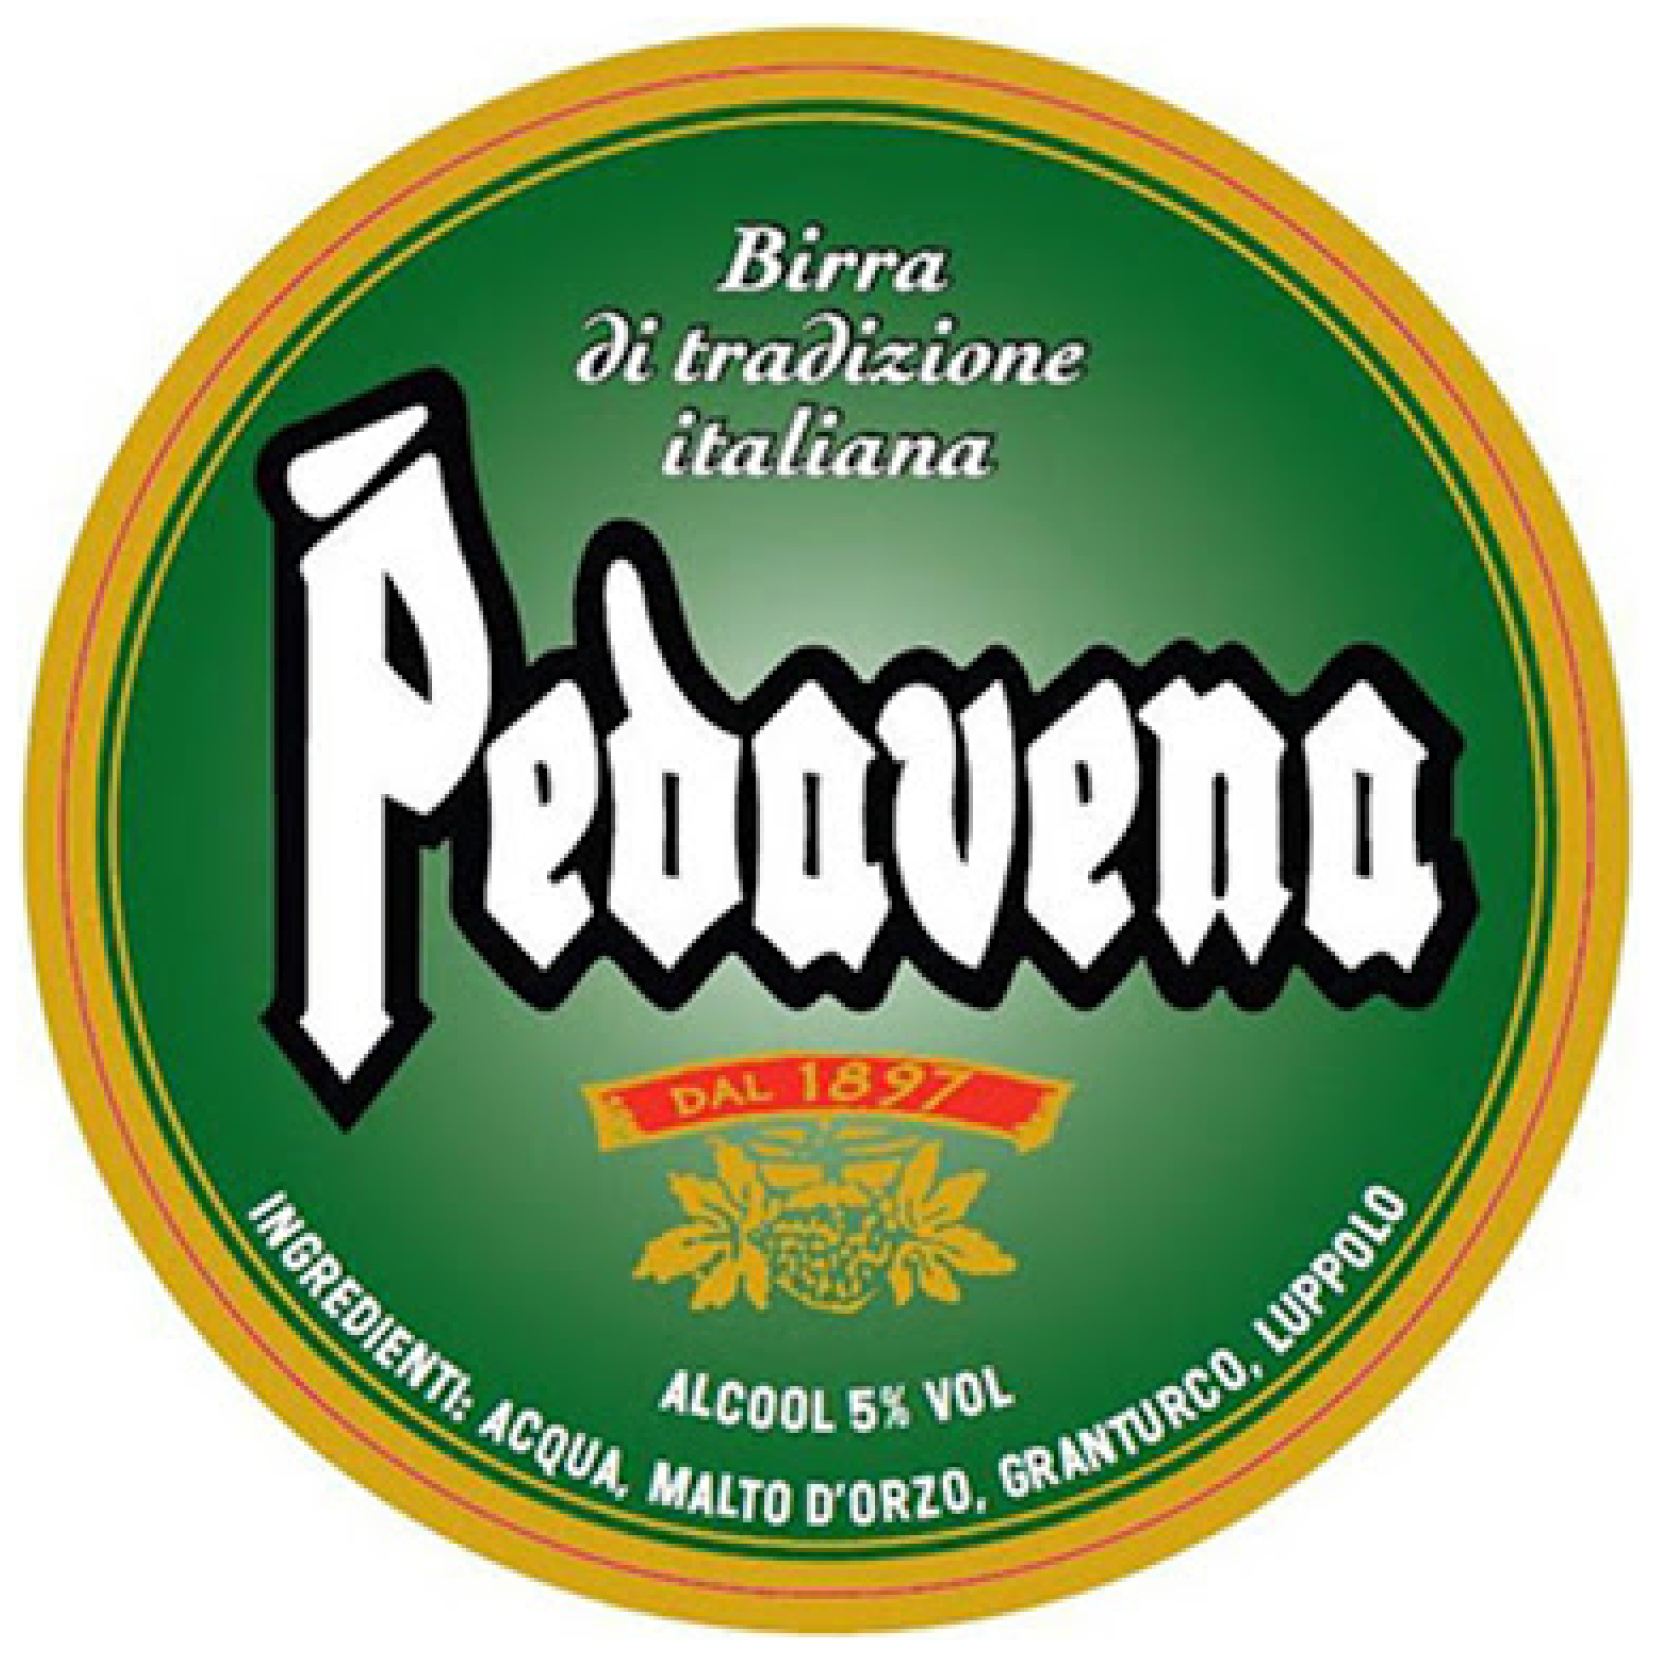 Birra Pedavena Birra tradizione italiana - Ristorante Pizzeria Pub Birreria Fabbrica di Pedavena Lissone